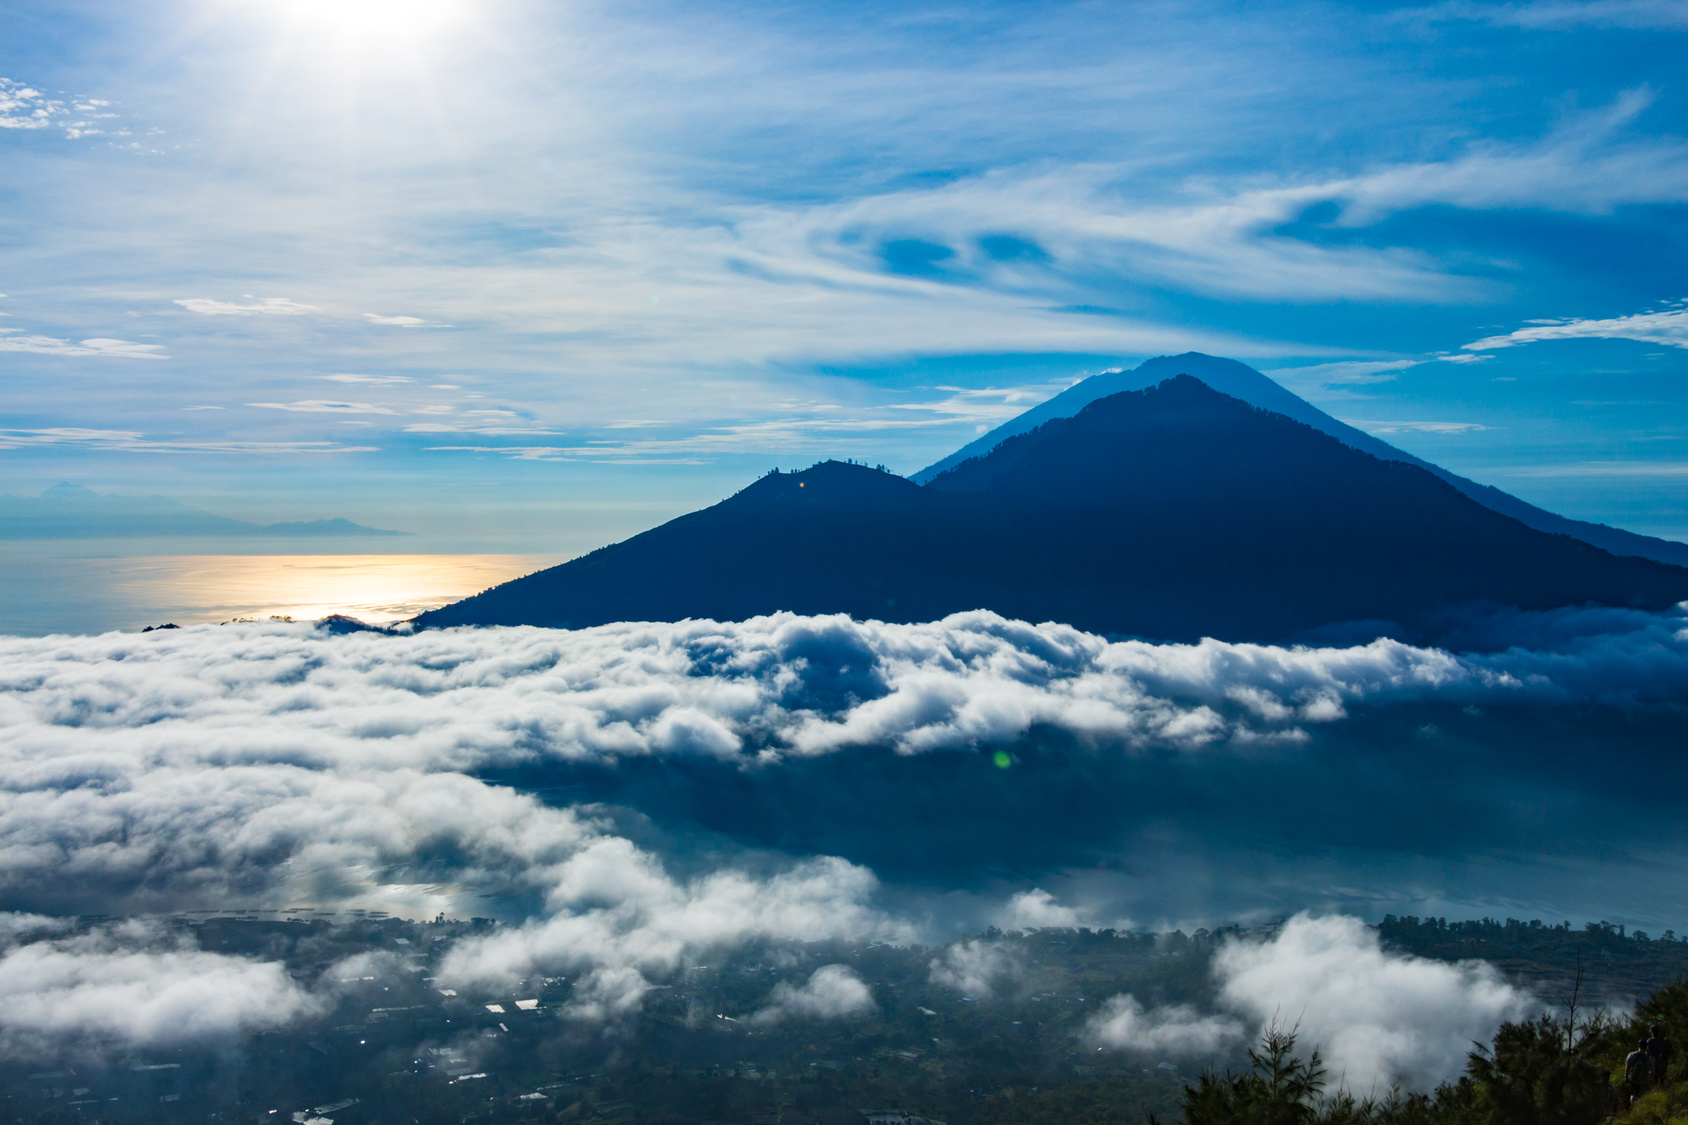 À Bali, le risque d'une éruption majeure demeure. Ici, le volcan Agung quand il était encore calme. © umike_foto, Fotolia